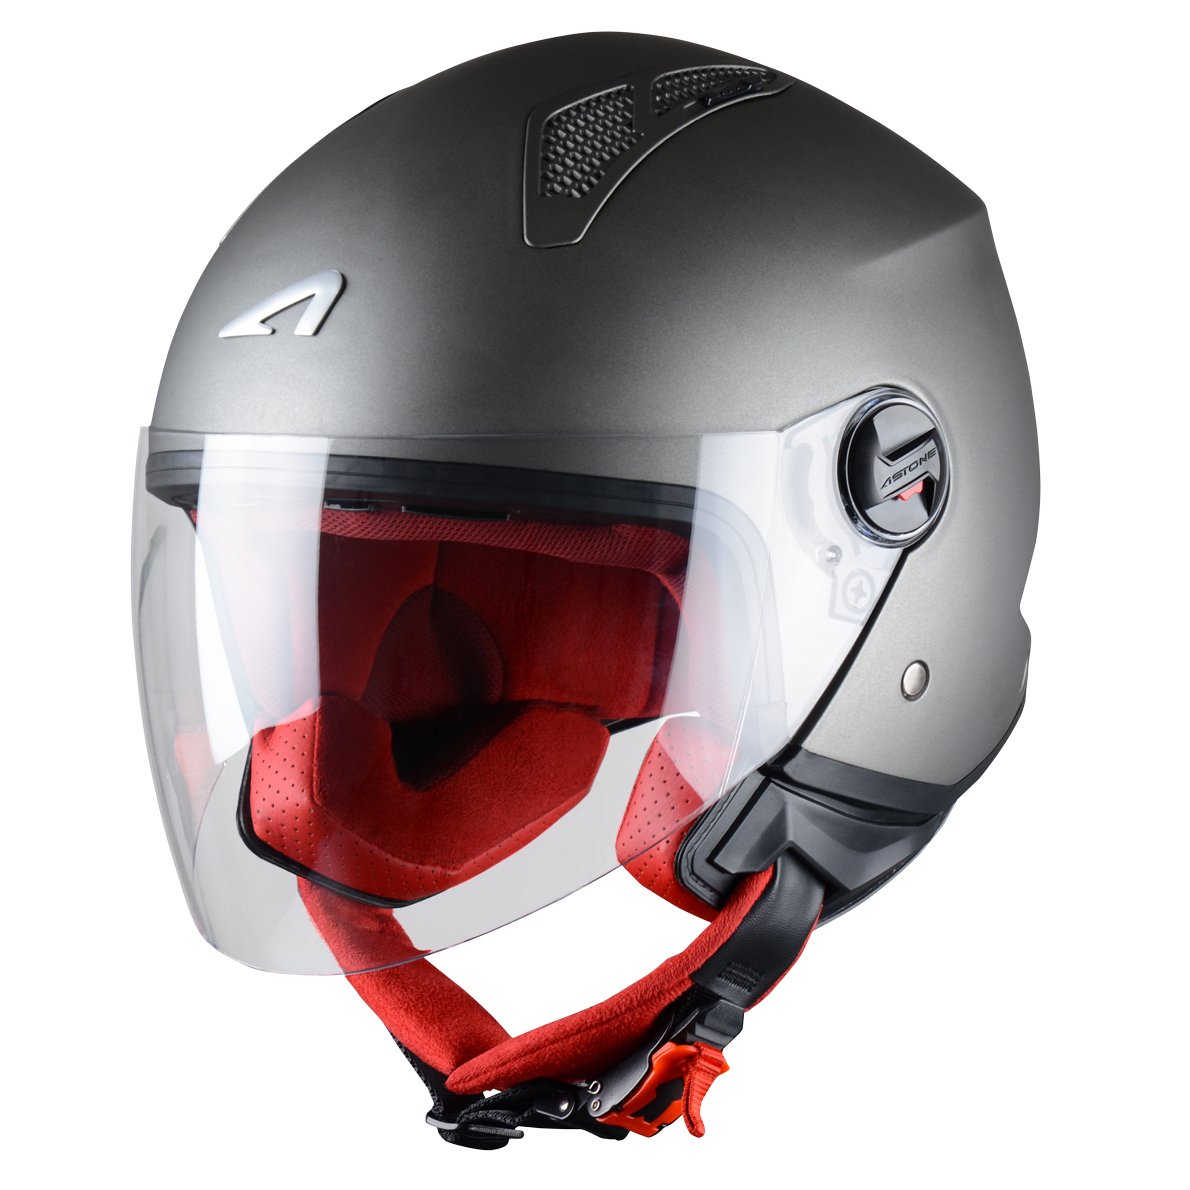 Astone Helmets - MINIJET monocolor - Casque jet - Casque jet urbain - Casque moto et scooter compact - Coque en polycarbonate -Titanium XS von Astone Helmets